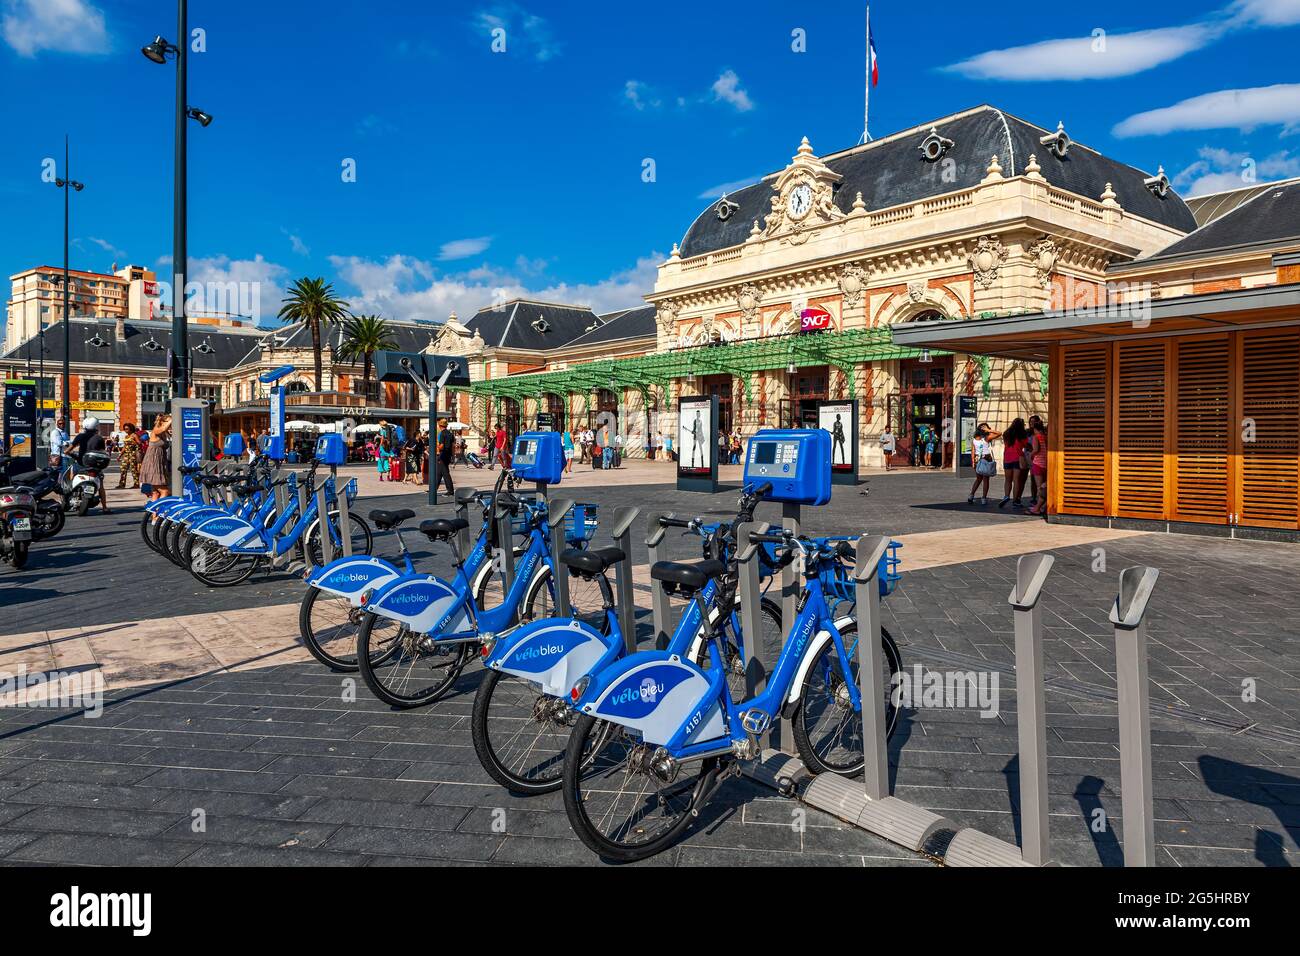 NIZZA, FRANKREICH - 23. AUGUST 2014: Fahrradverleih auf dem Platz vor dem Hauptbahnhof von Nizza - berühmtem Touristenort an der französischen Riviera Stockfoto